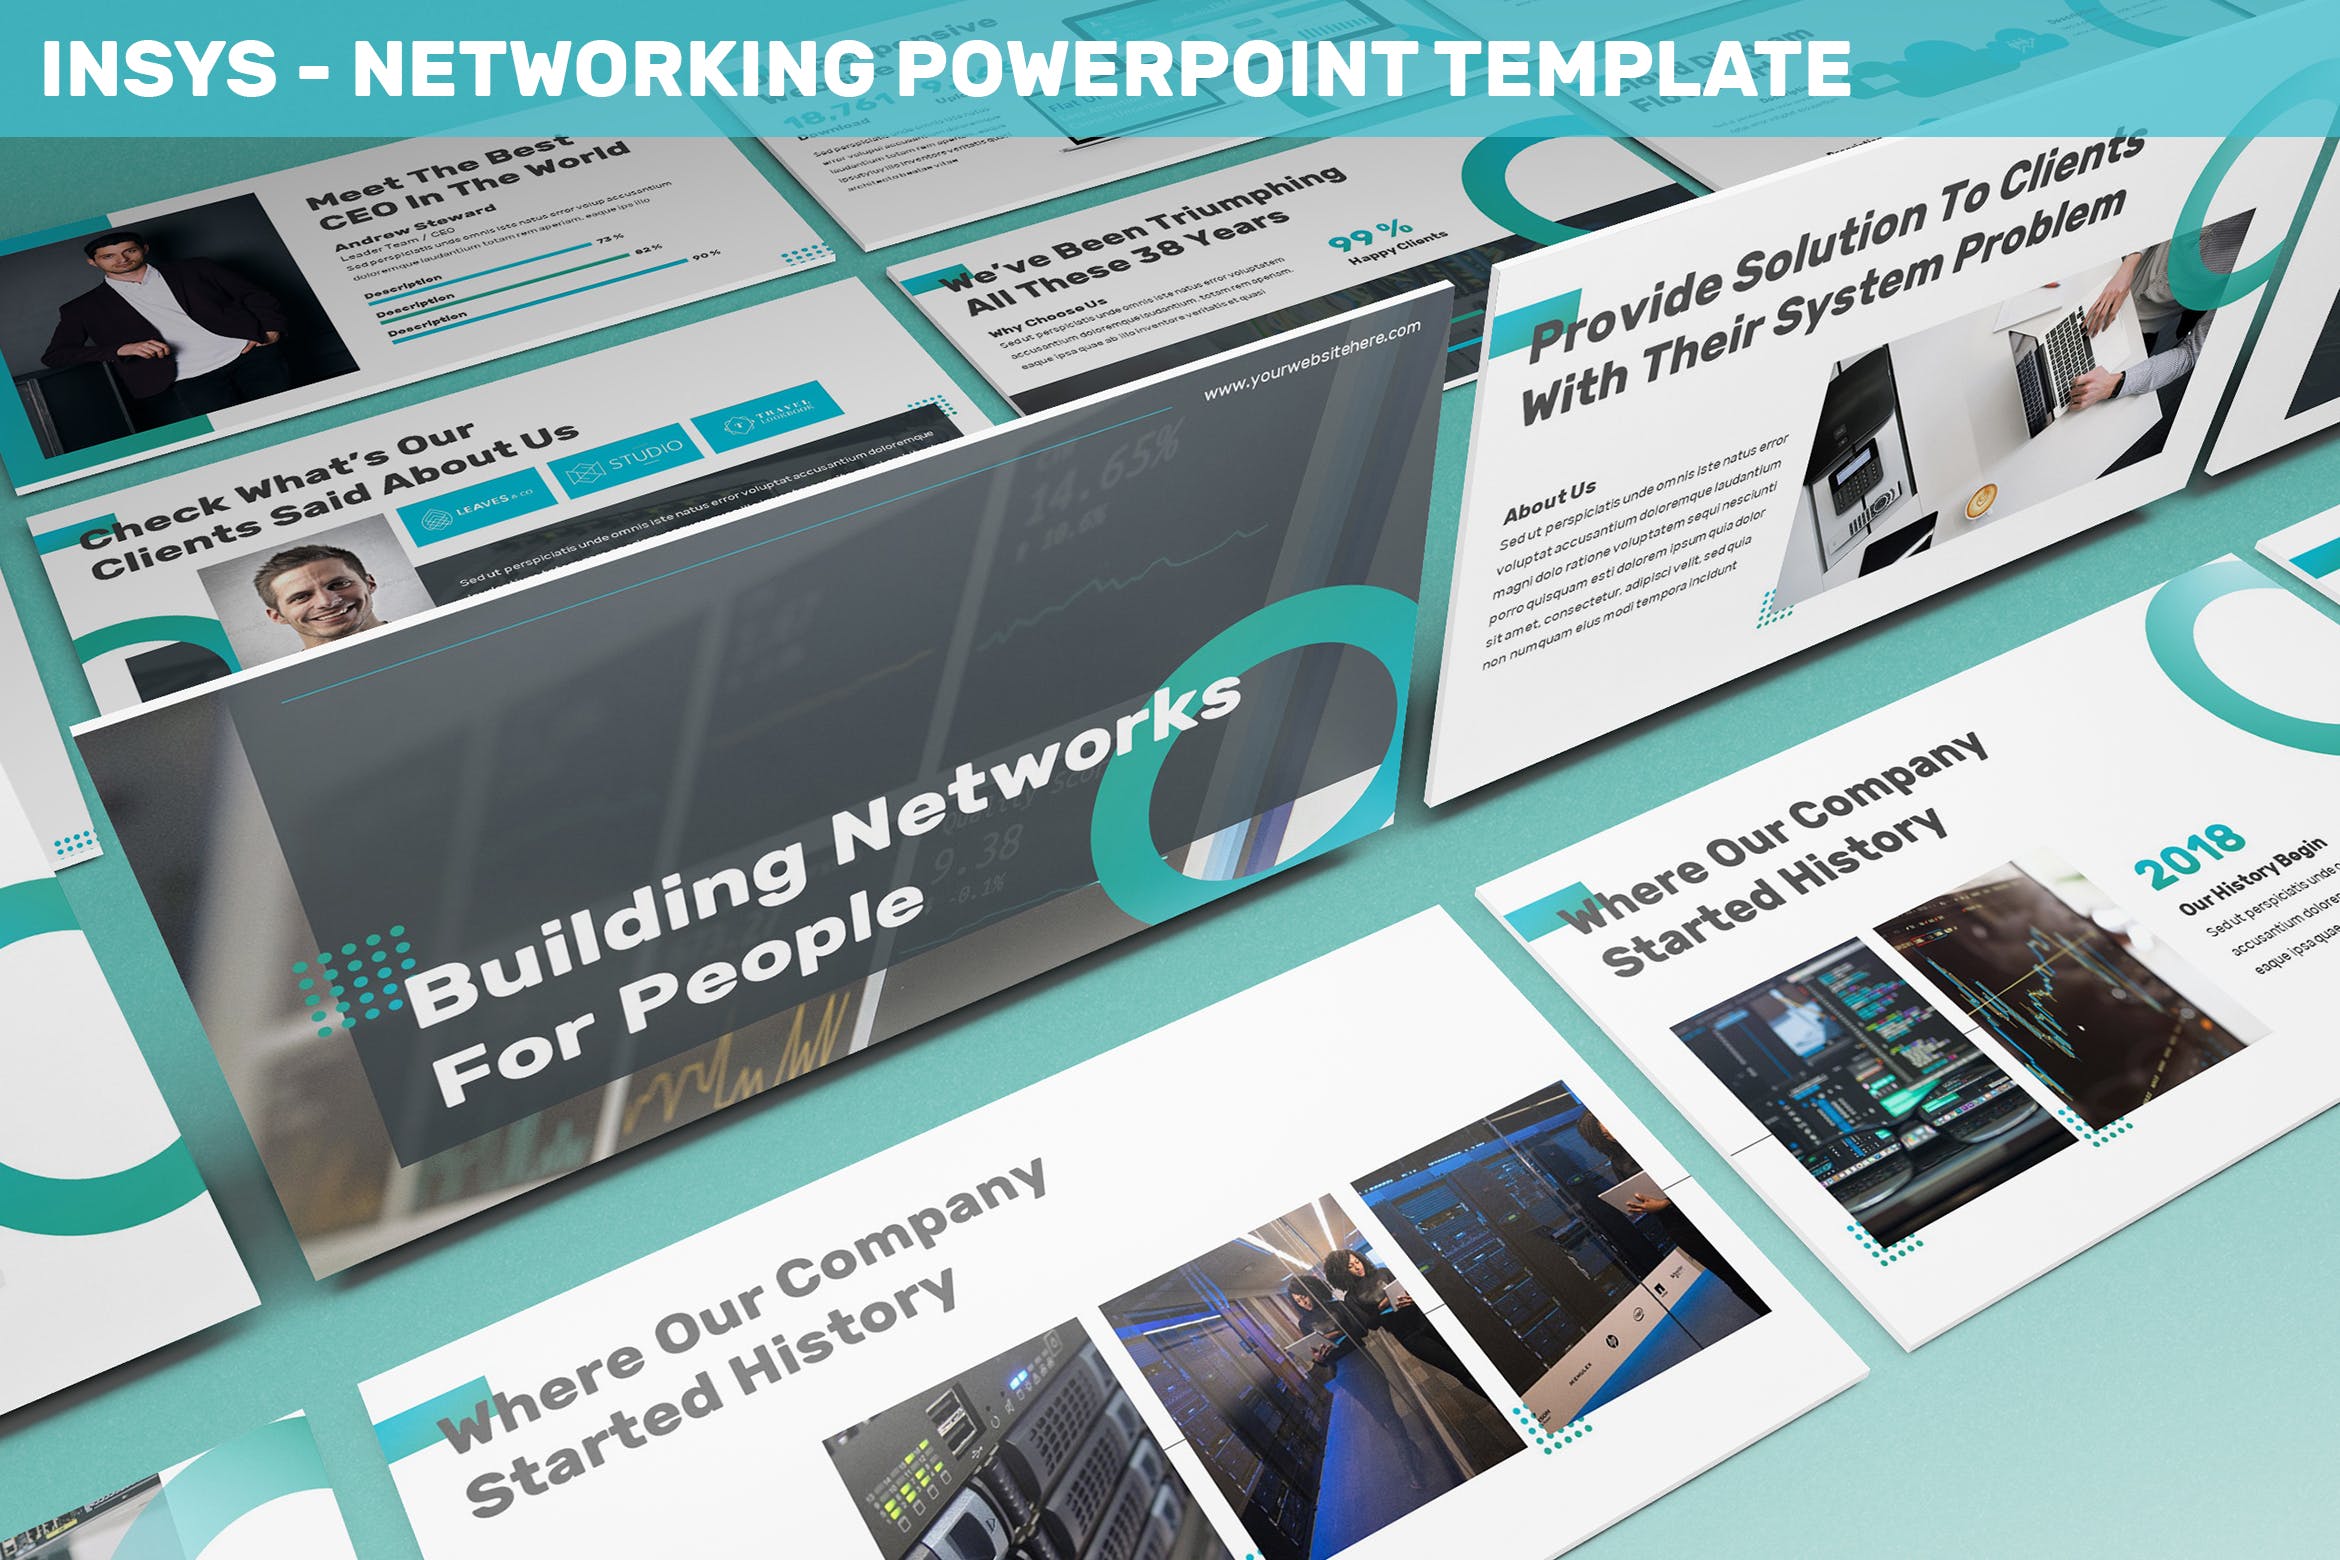 网络科技公司/技术/融资主题非凡图库精选PPT模板 Insys – Networking Powerpoint Template插图